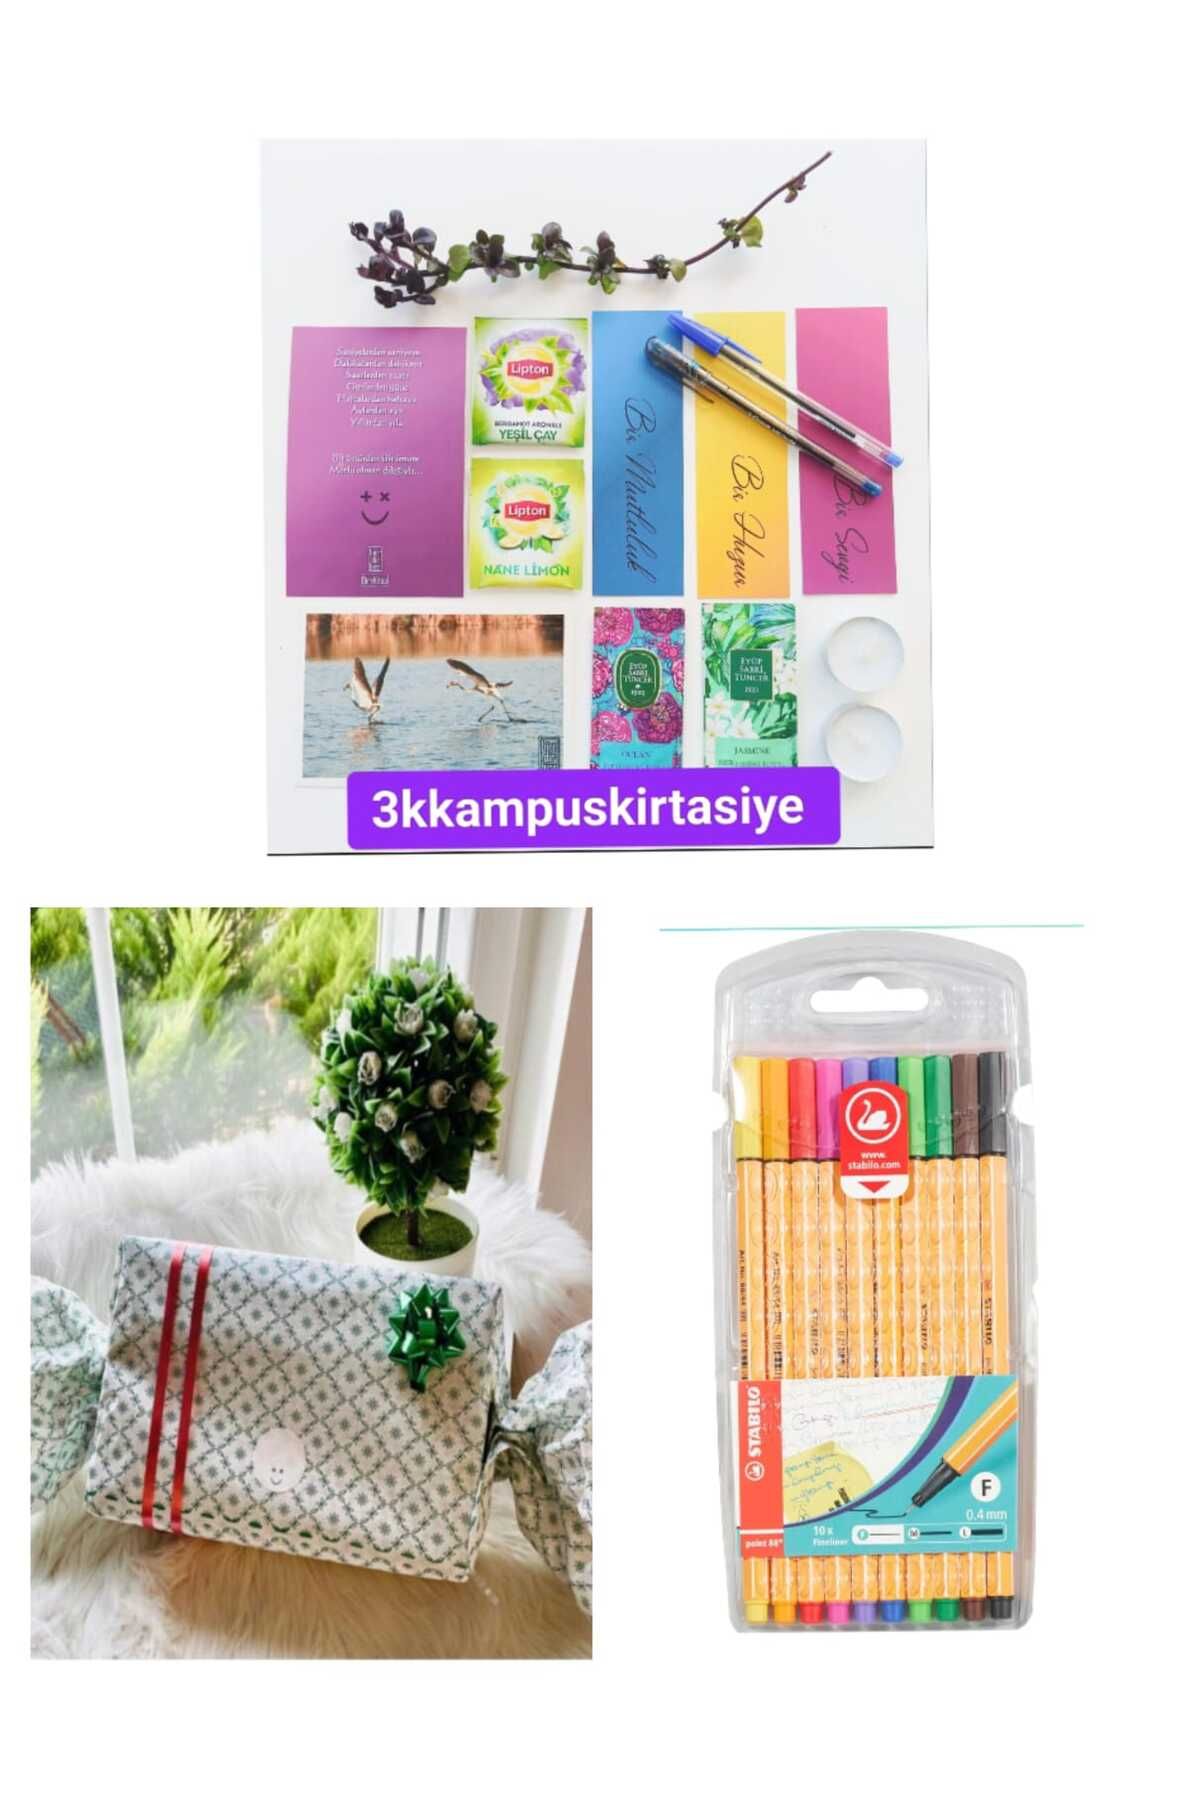 Birrdirbirr konsept şekerim hediye kutusunda-stabilo 10lu keçeli kalem-set-tealight-motto kart-ayraç